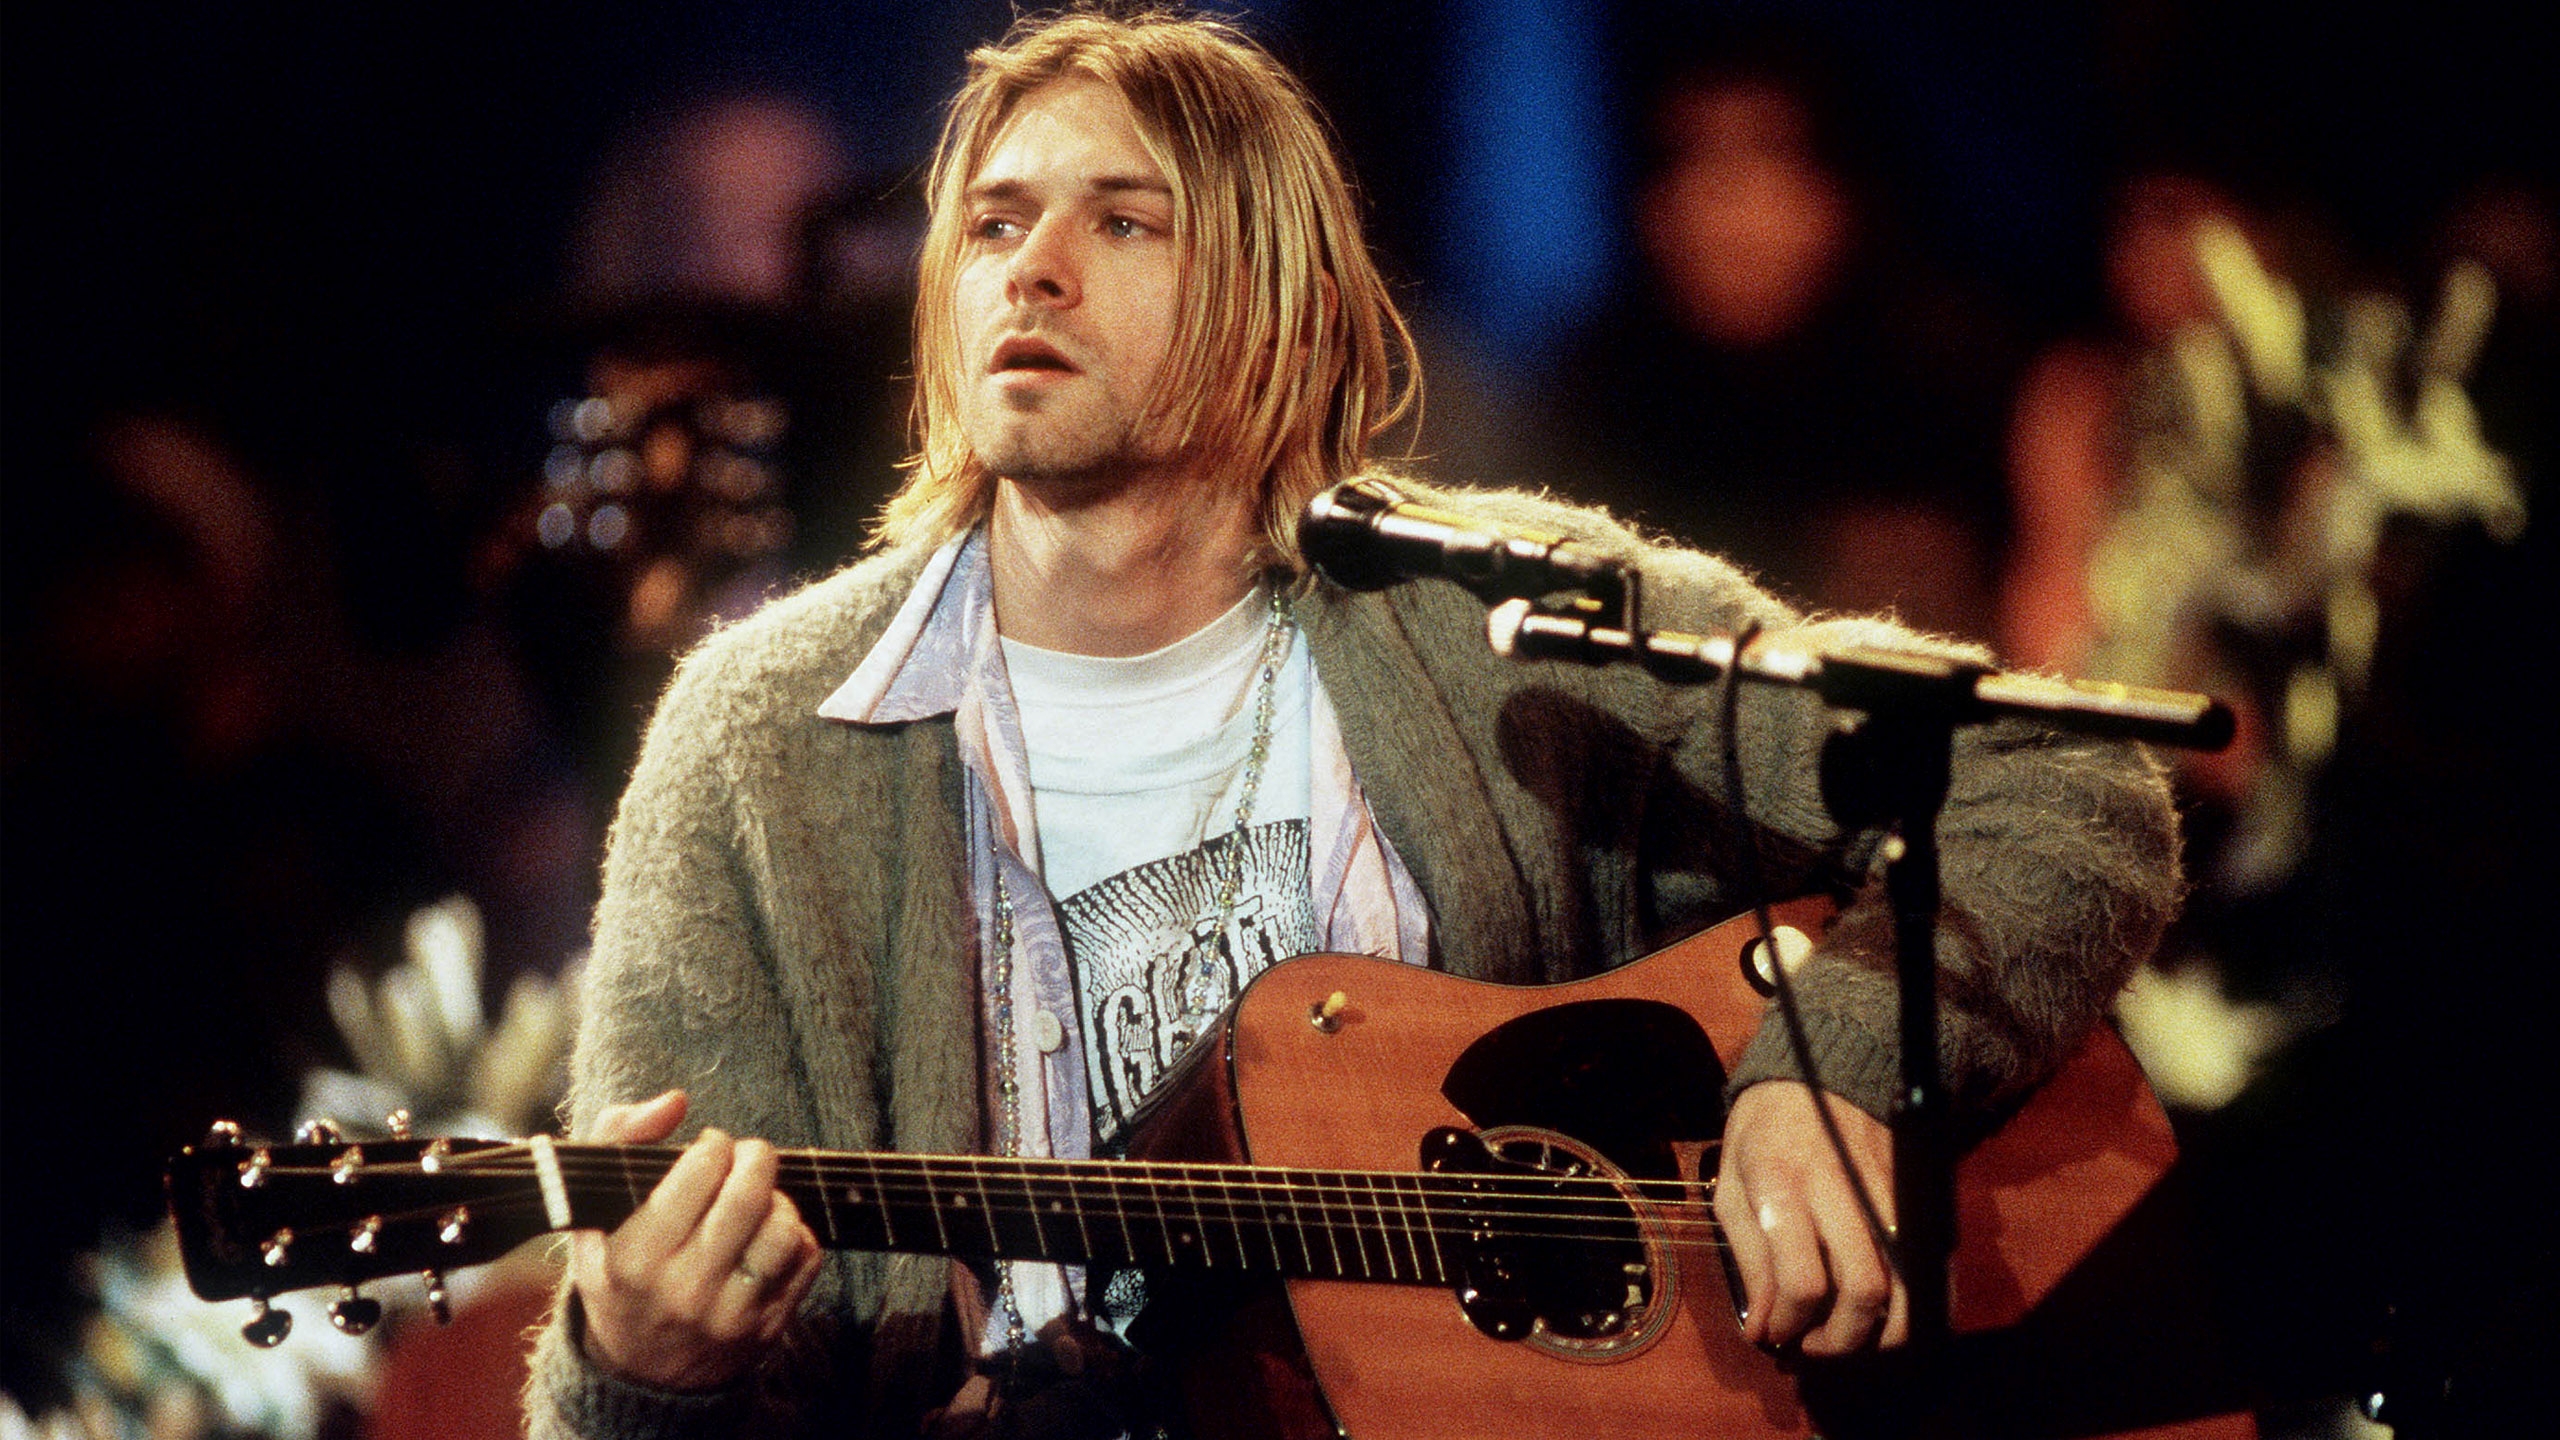 Fonds d'écran Kurt Cobain : tous les wallpapers Kurt Cobain